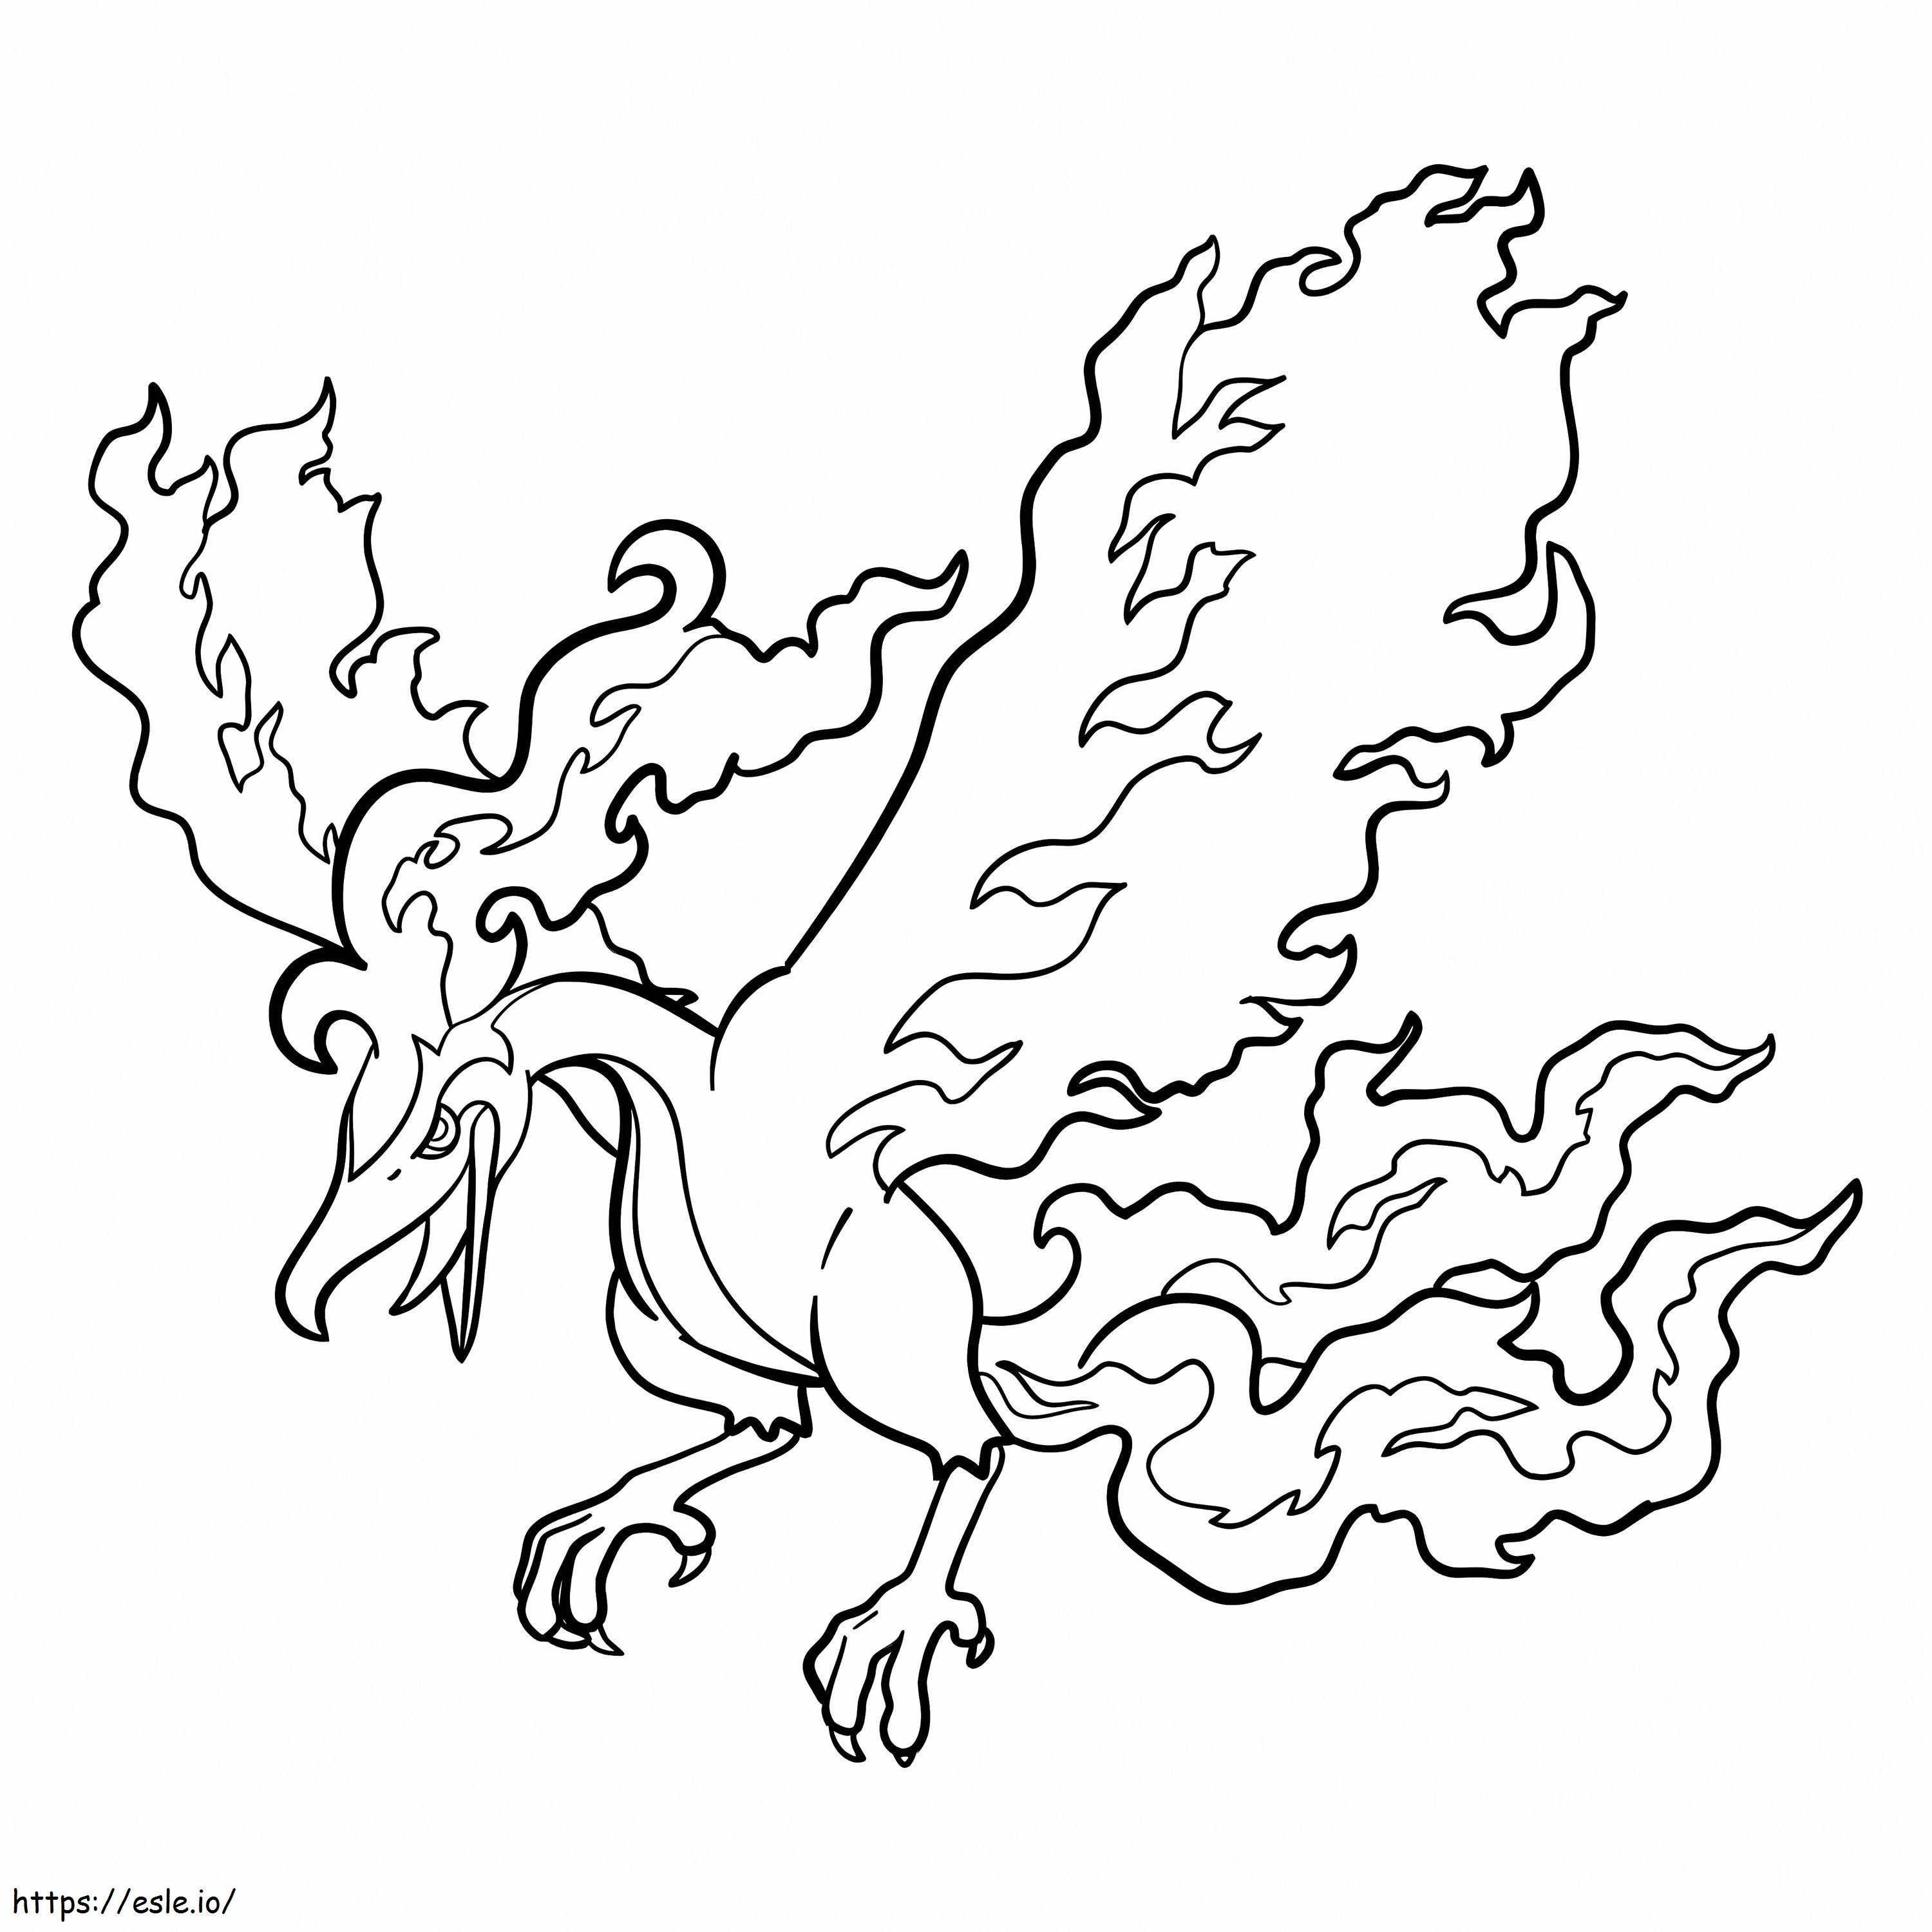 Desenhos para colorir de Moltres: traga o lendário fogo / vôo